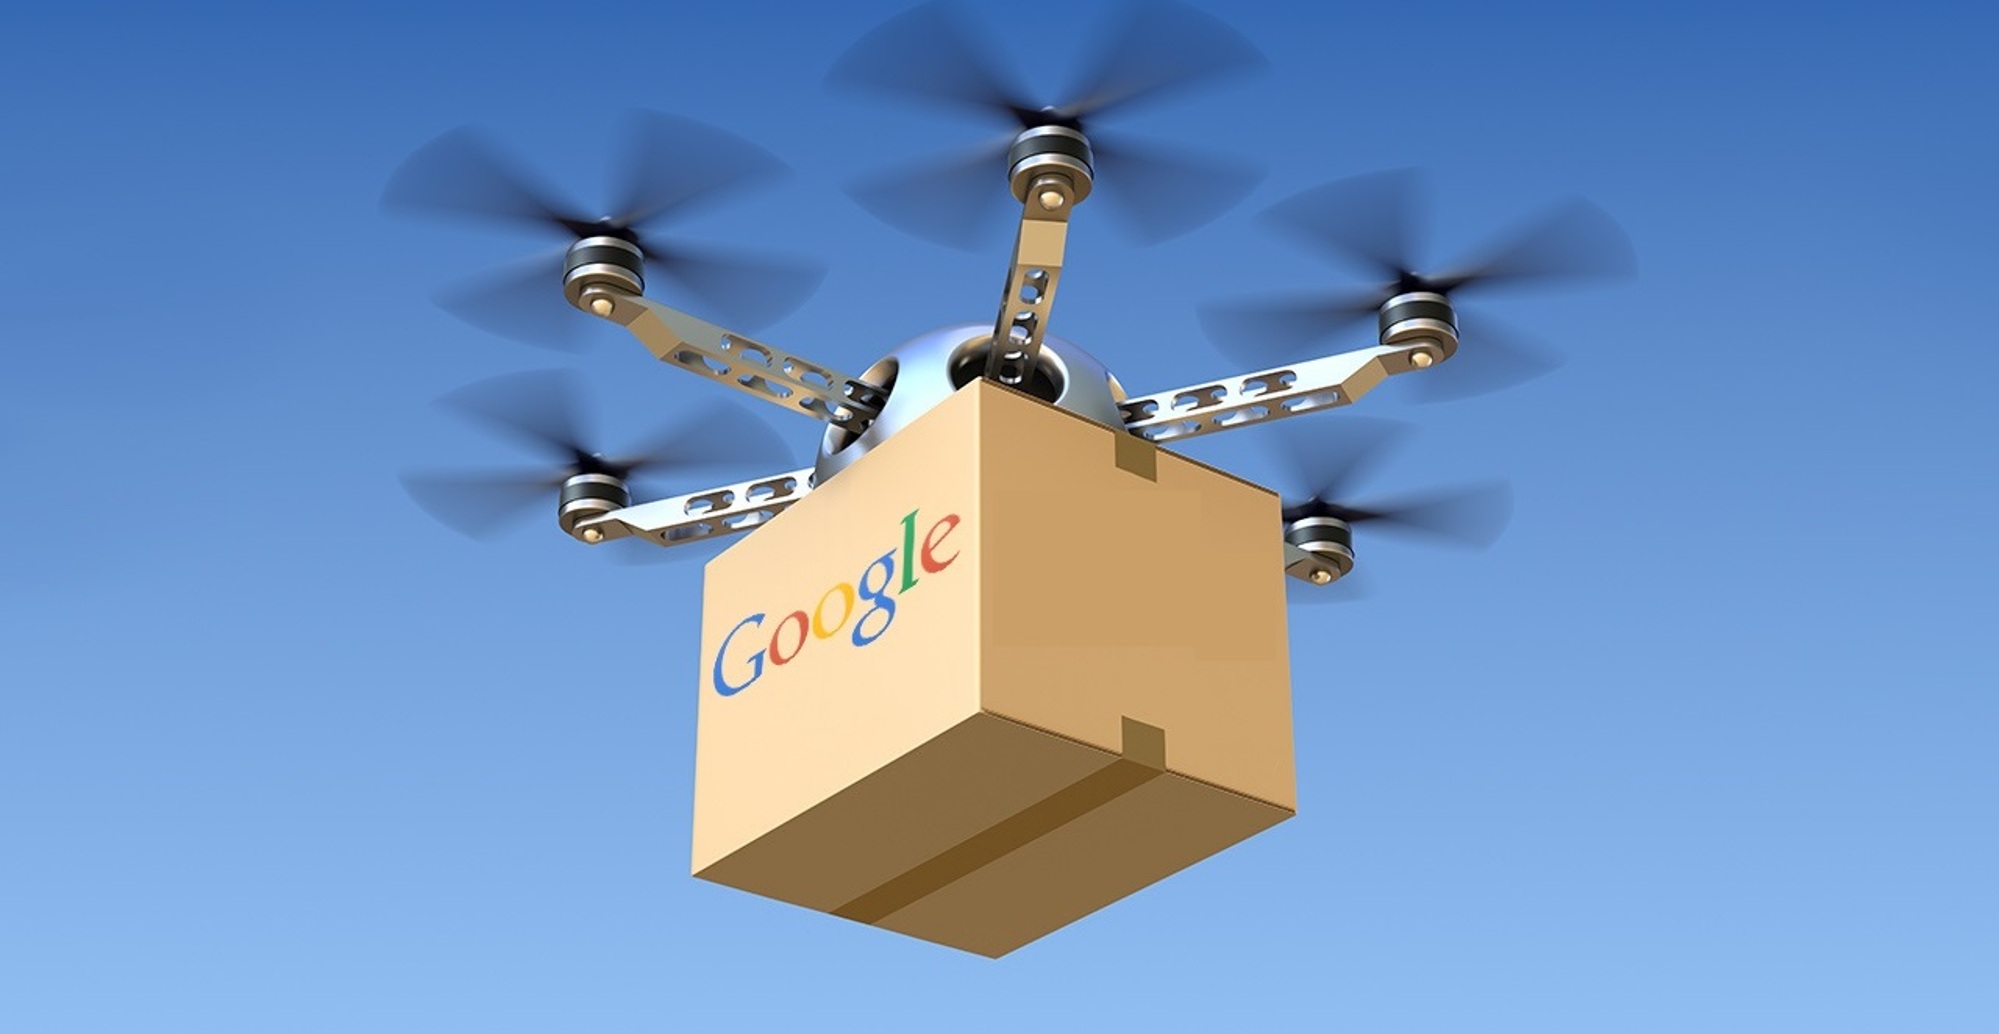 Drones de Google enviarían paquetes en 2017